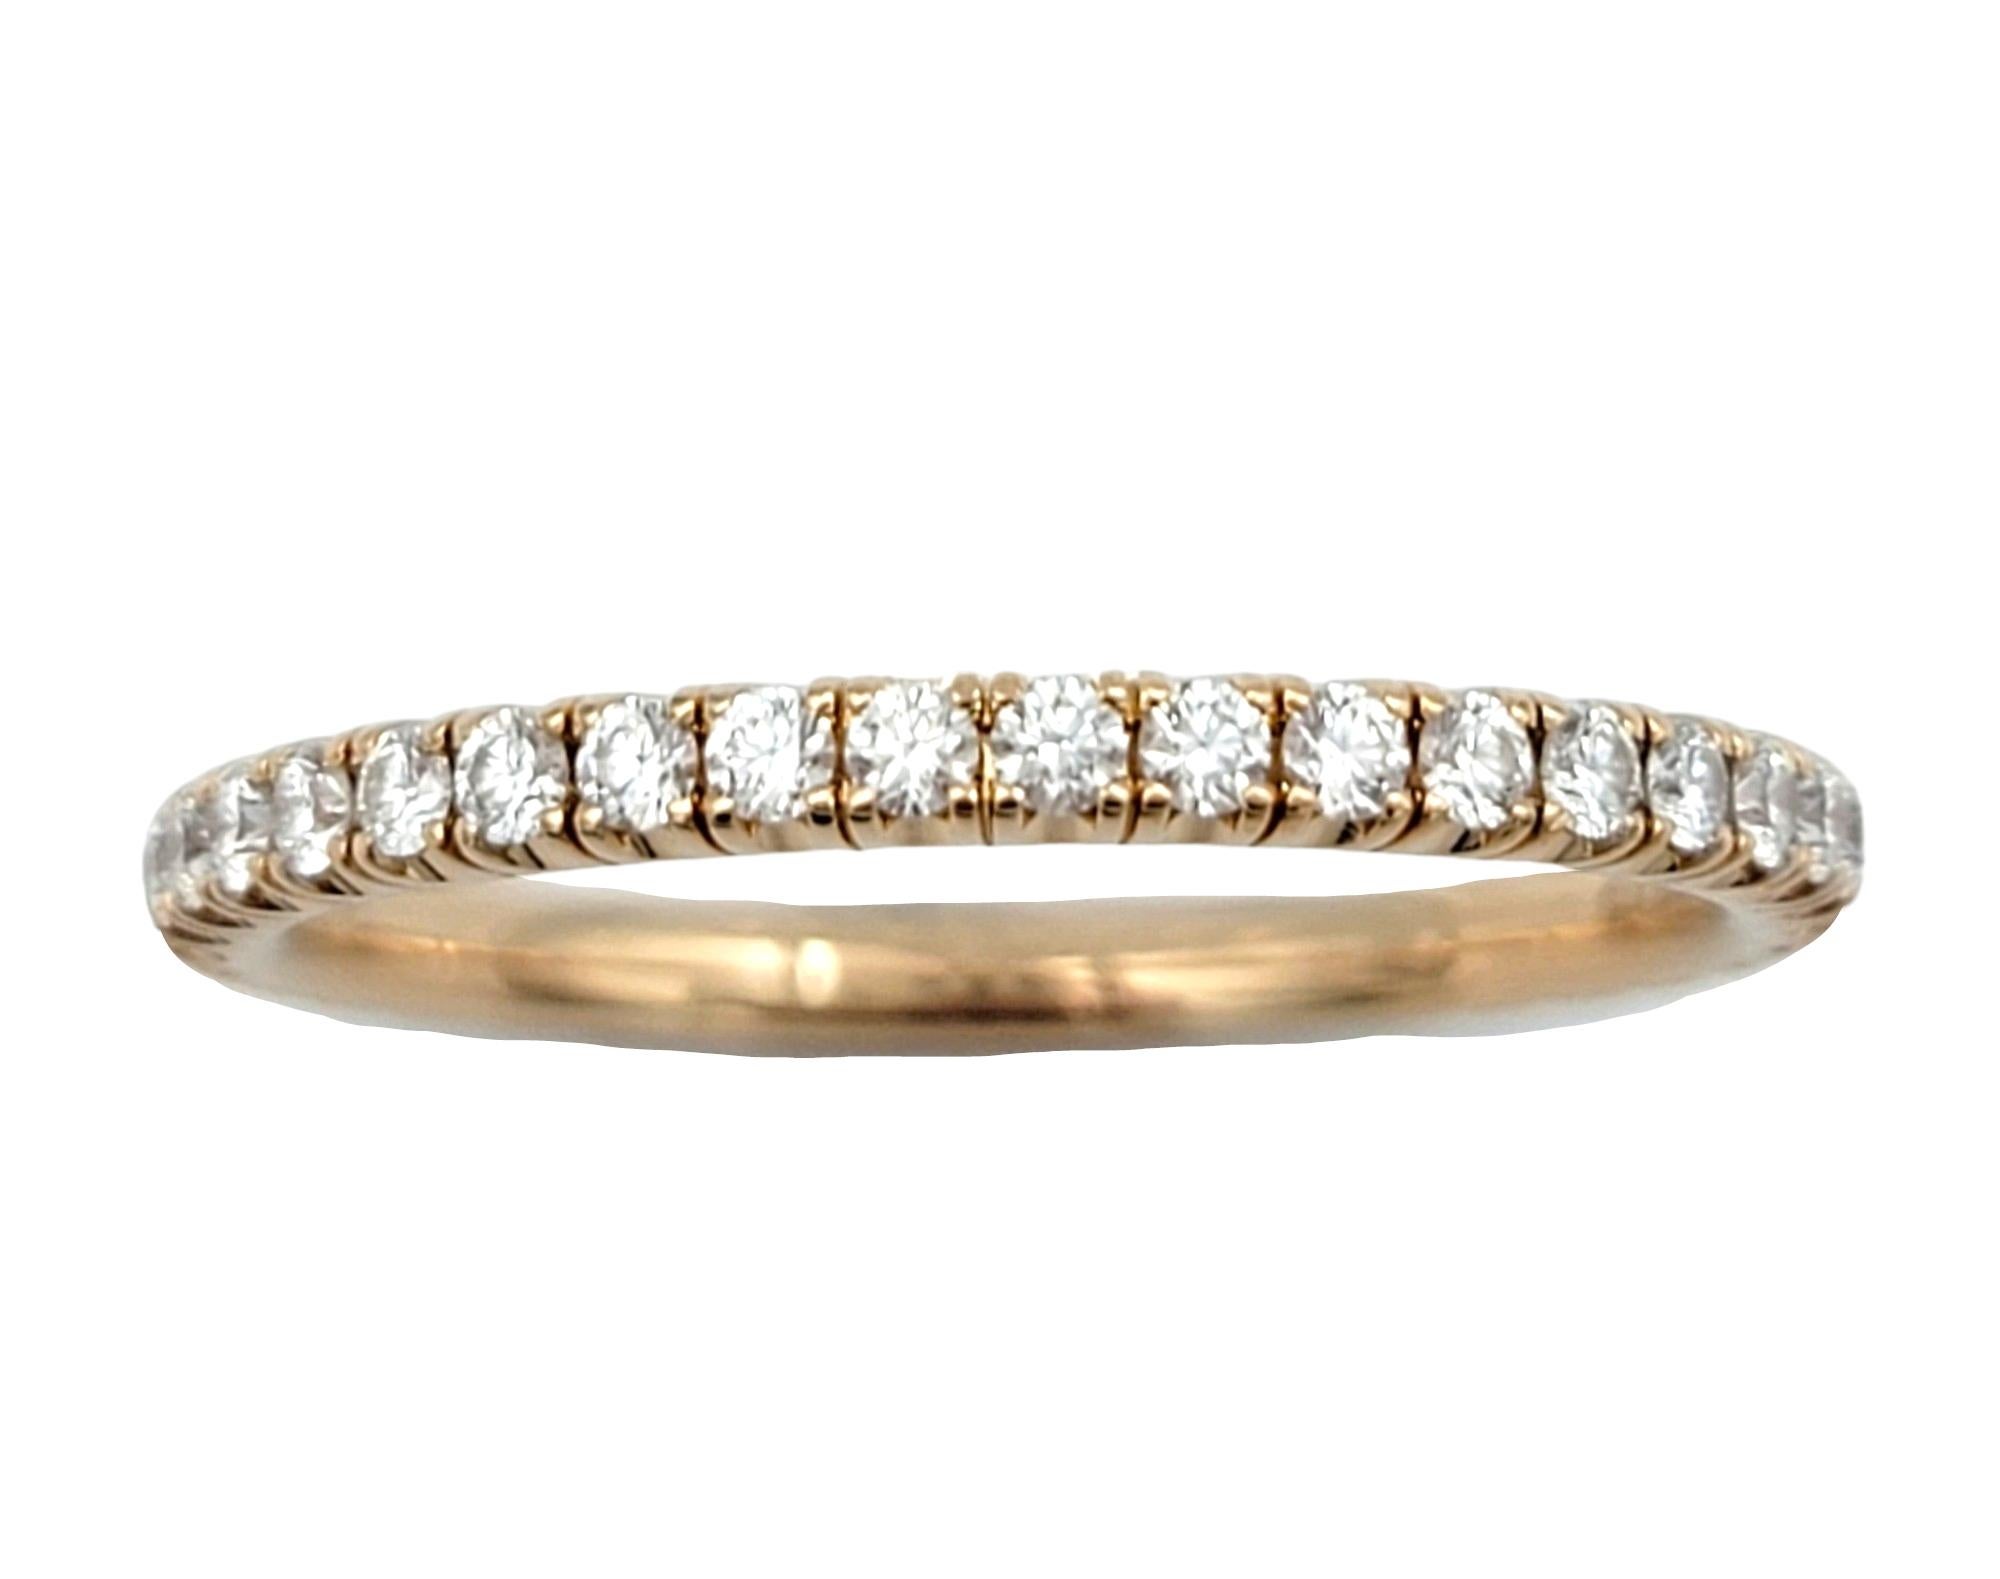 Ringgröße: 6.75

Dieser Cartier Diamantring für die Ewigkeit ist ein Kunstwerk. Der aus luxuriösem 18-karätigem Roségold gefertigte Ring verfügt über eine durchgehende Reihe exquisiter Diamanten, die das Band umschließen und ein faszinierendes